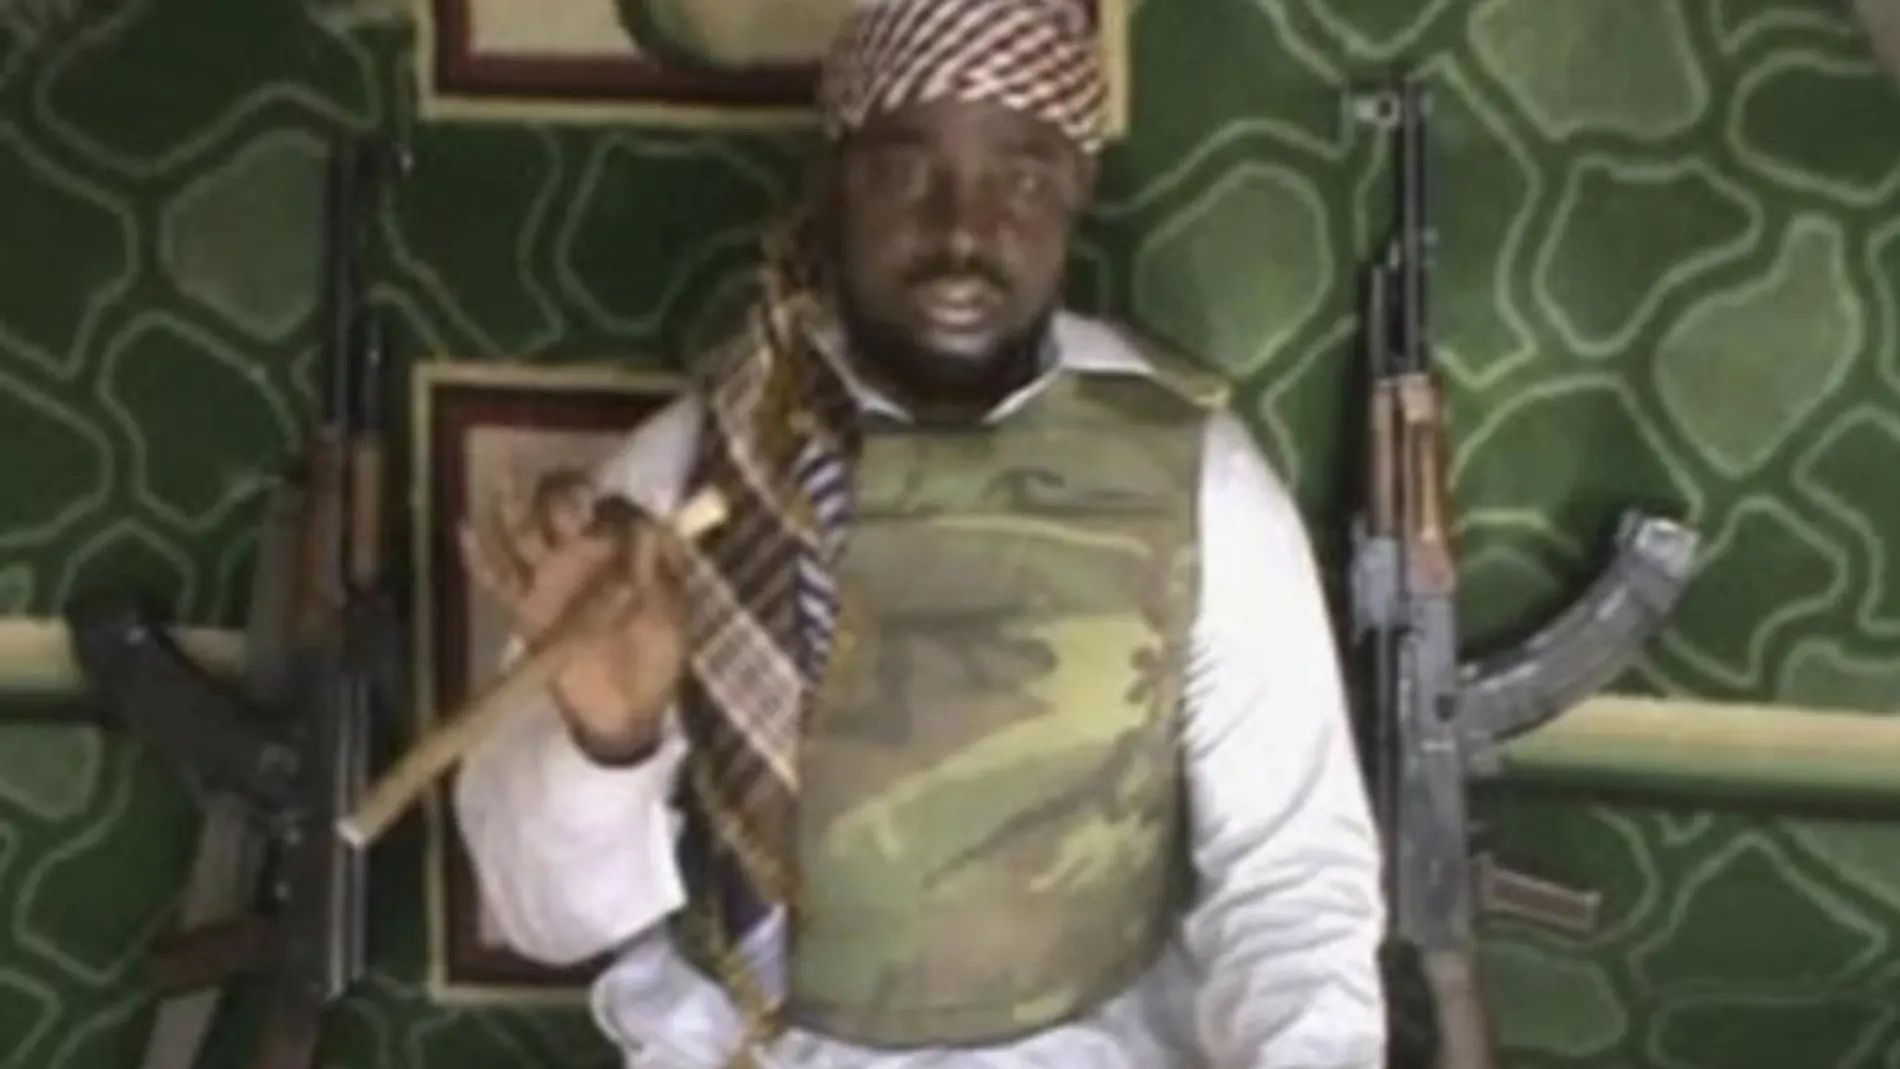 El escurridizo Bin Laden africano